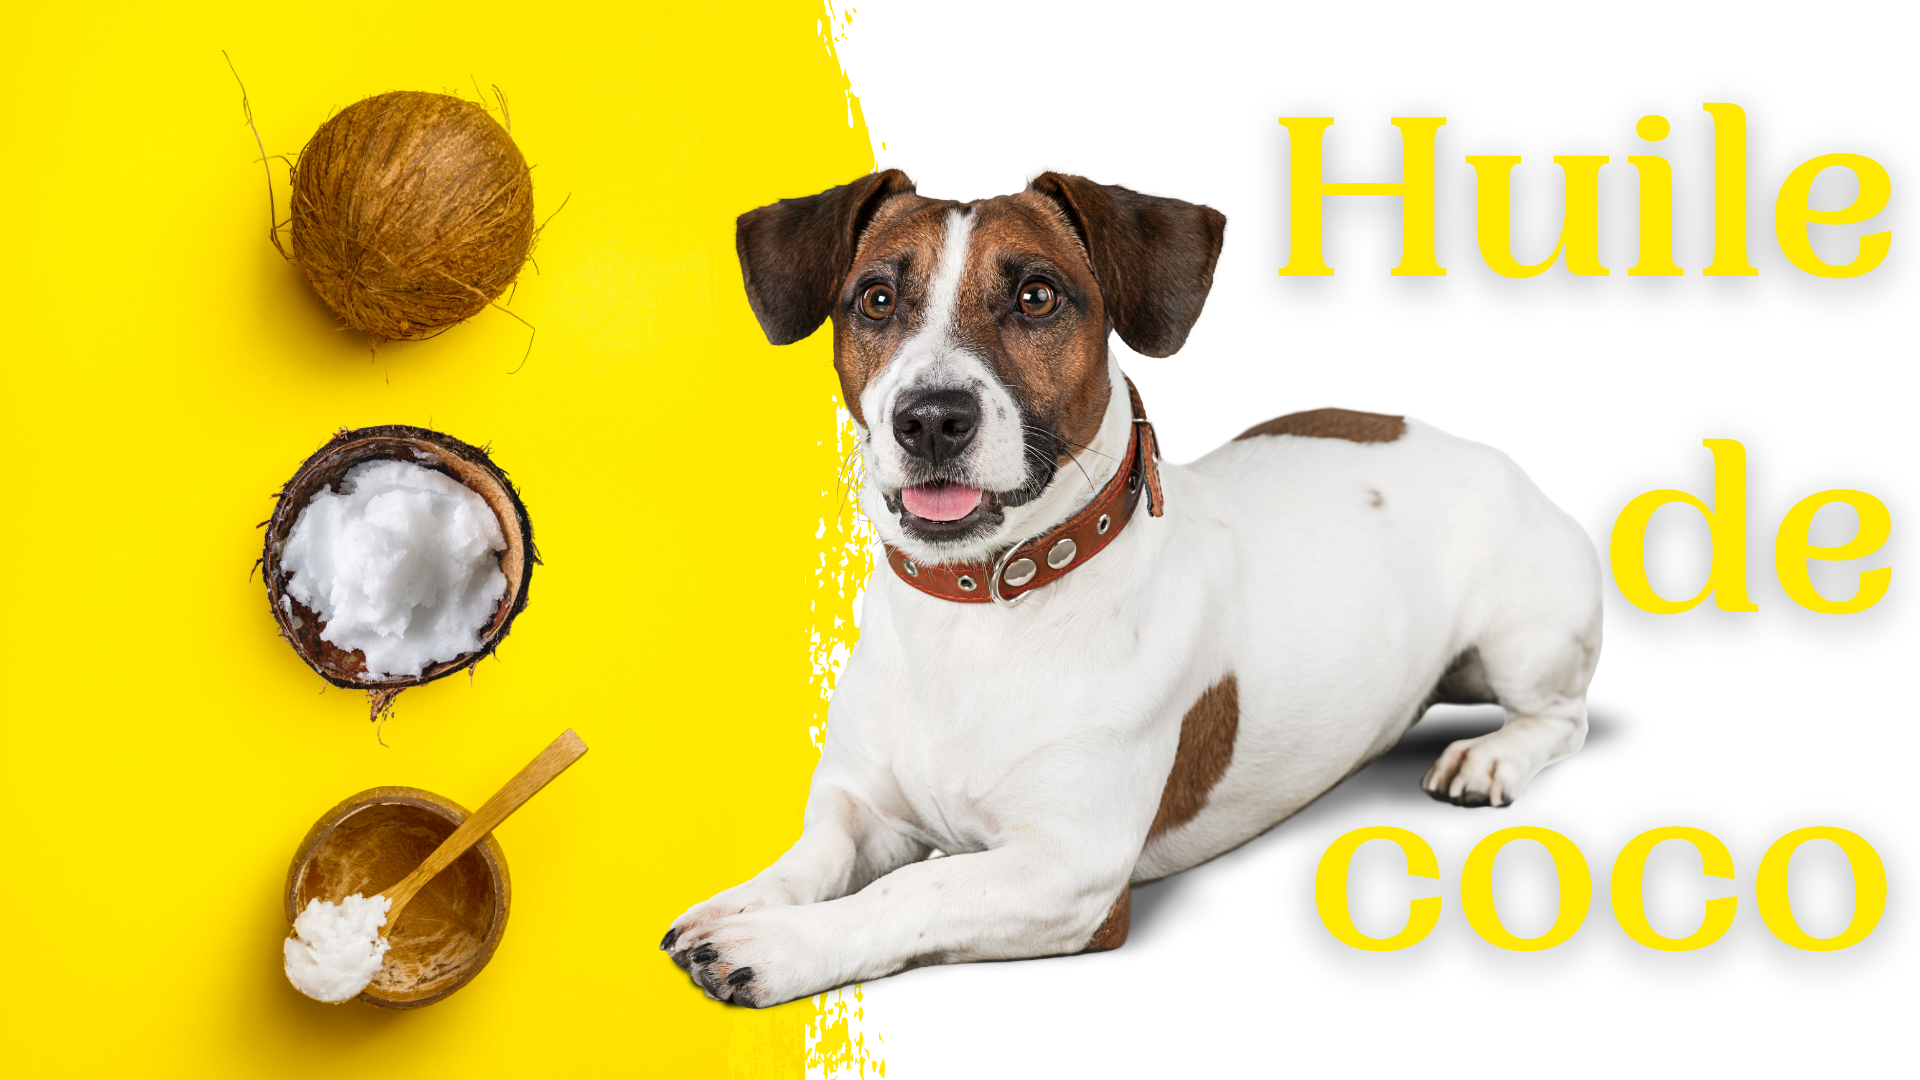 Huile de coco pour chien : indications, bienfaits et dangers (tout savoir)  - Groupe Santépourtous